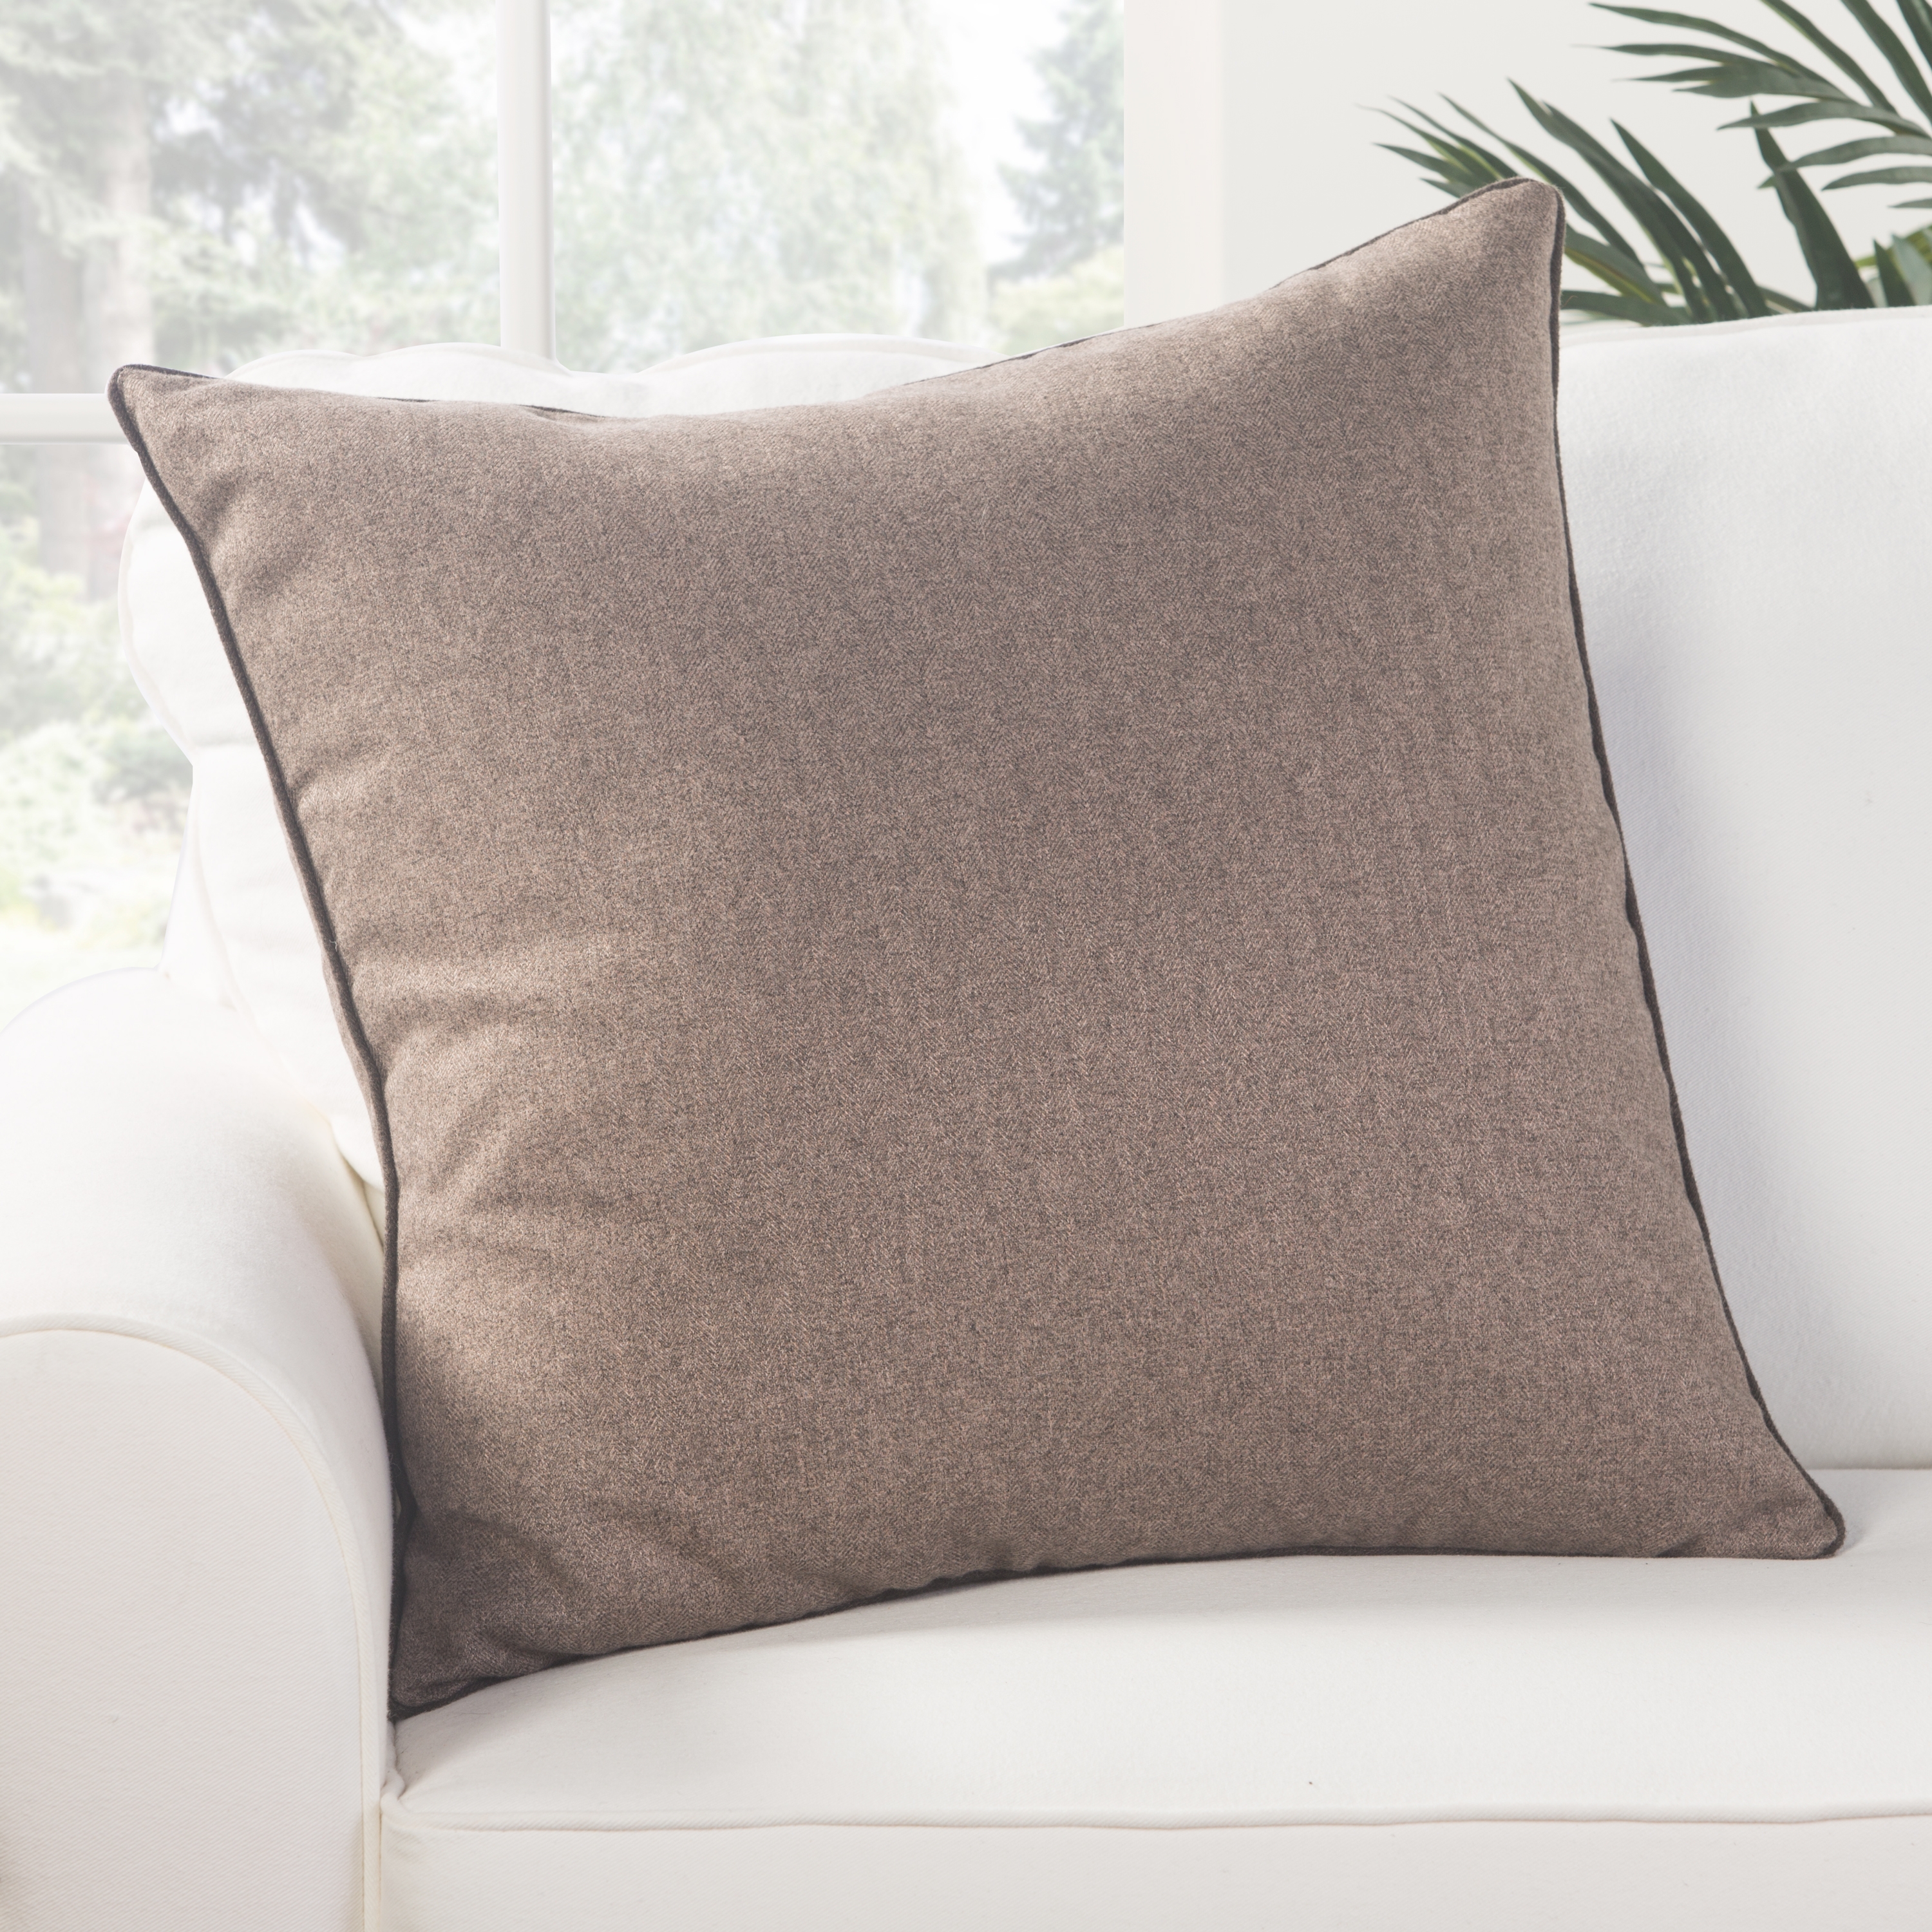 Design (US) Light Brown 22"X22" Pillow - Image 3